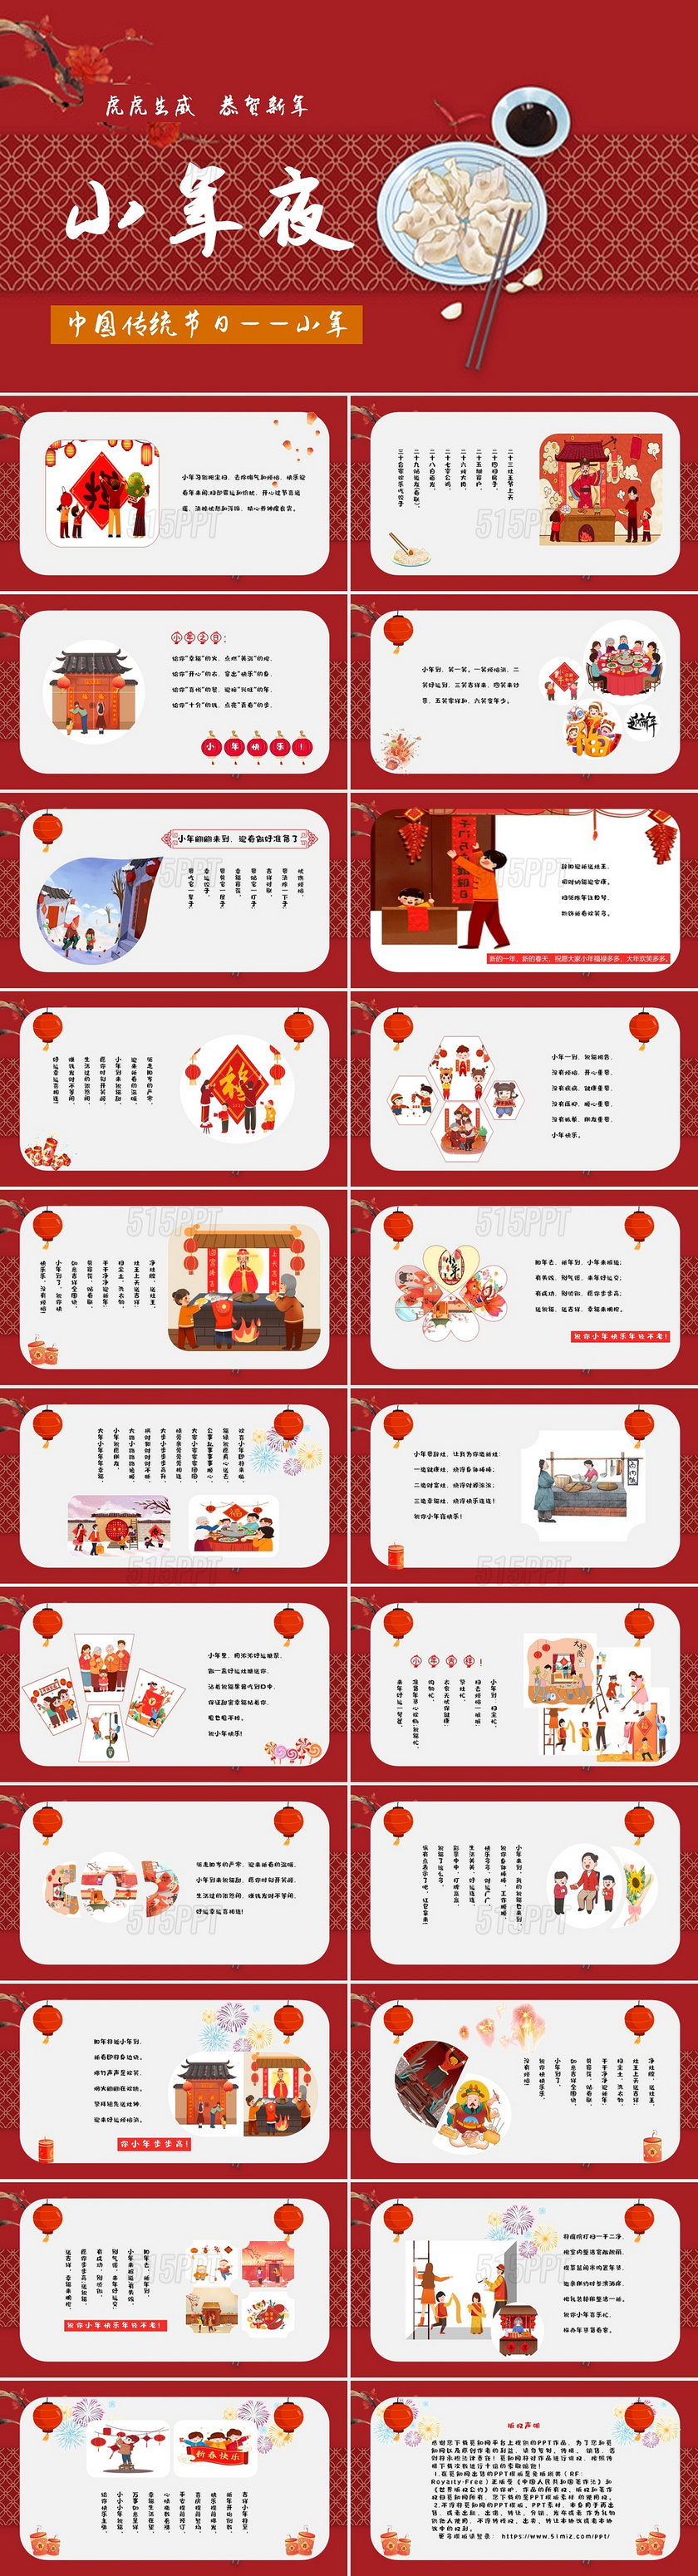 红色动漫卡通人物中国传统文化节日小年夜PPT